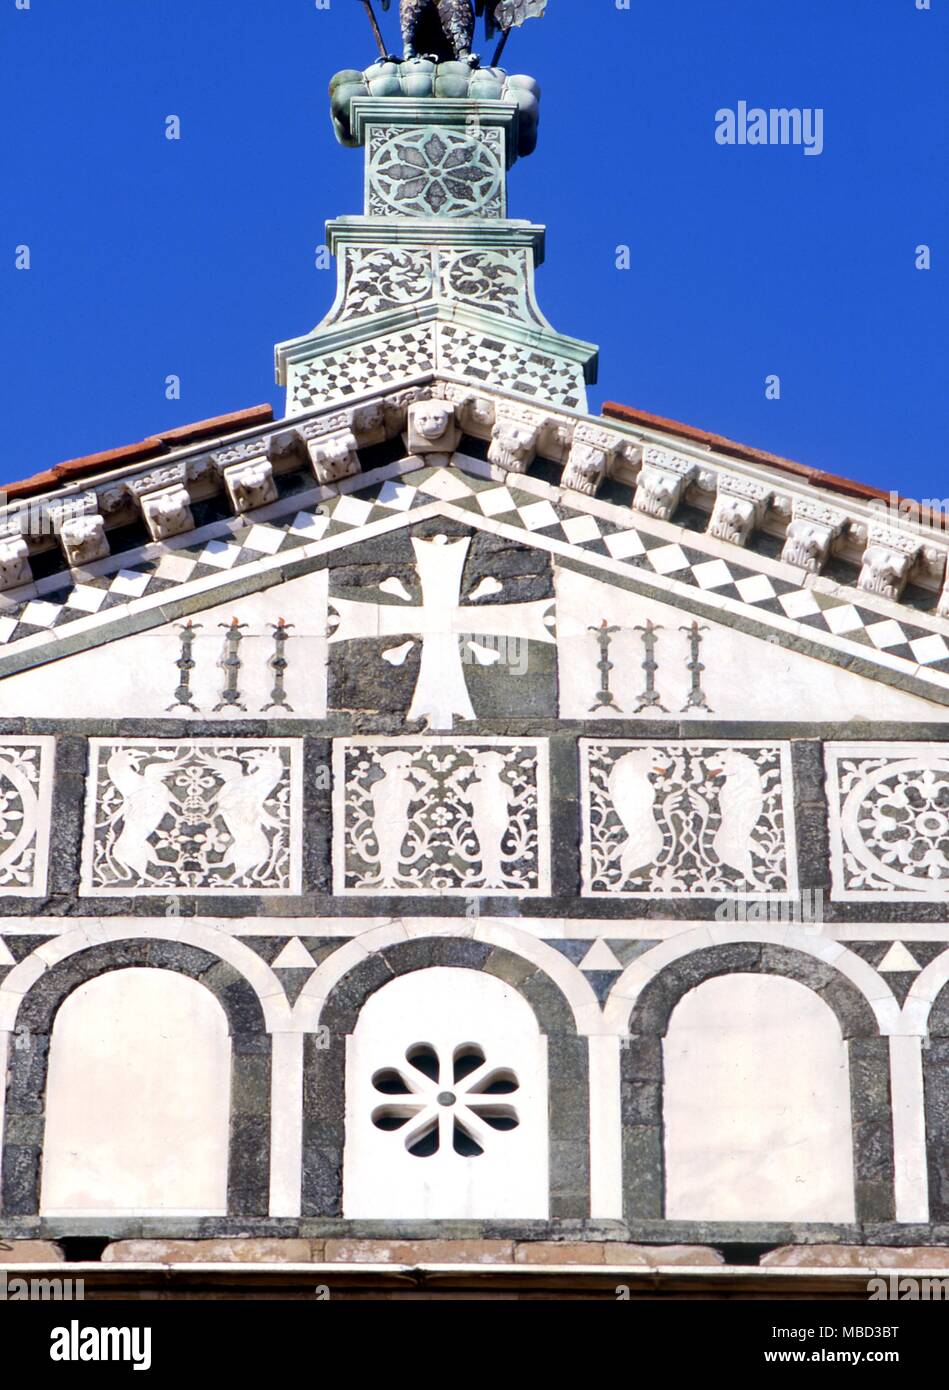 Symboles - Croix. La croix sur l'église de San Miniato al Monte de Florence, 1207. Les quatre projection blanche près du centre symbolisent les blessures de la crucifixion du Christ. Banque D'Images